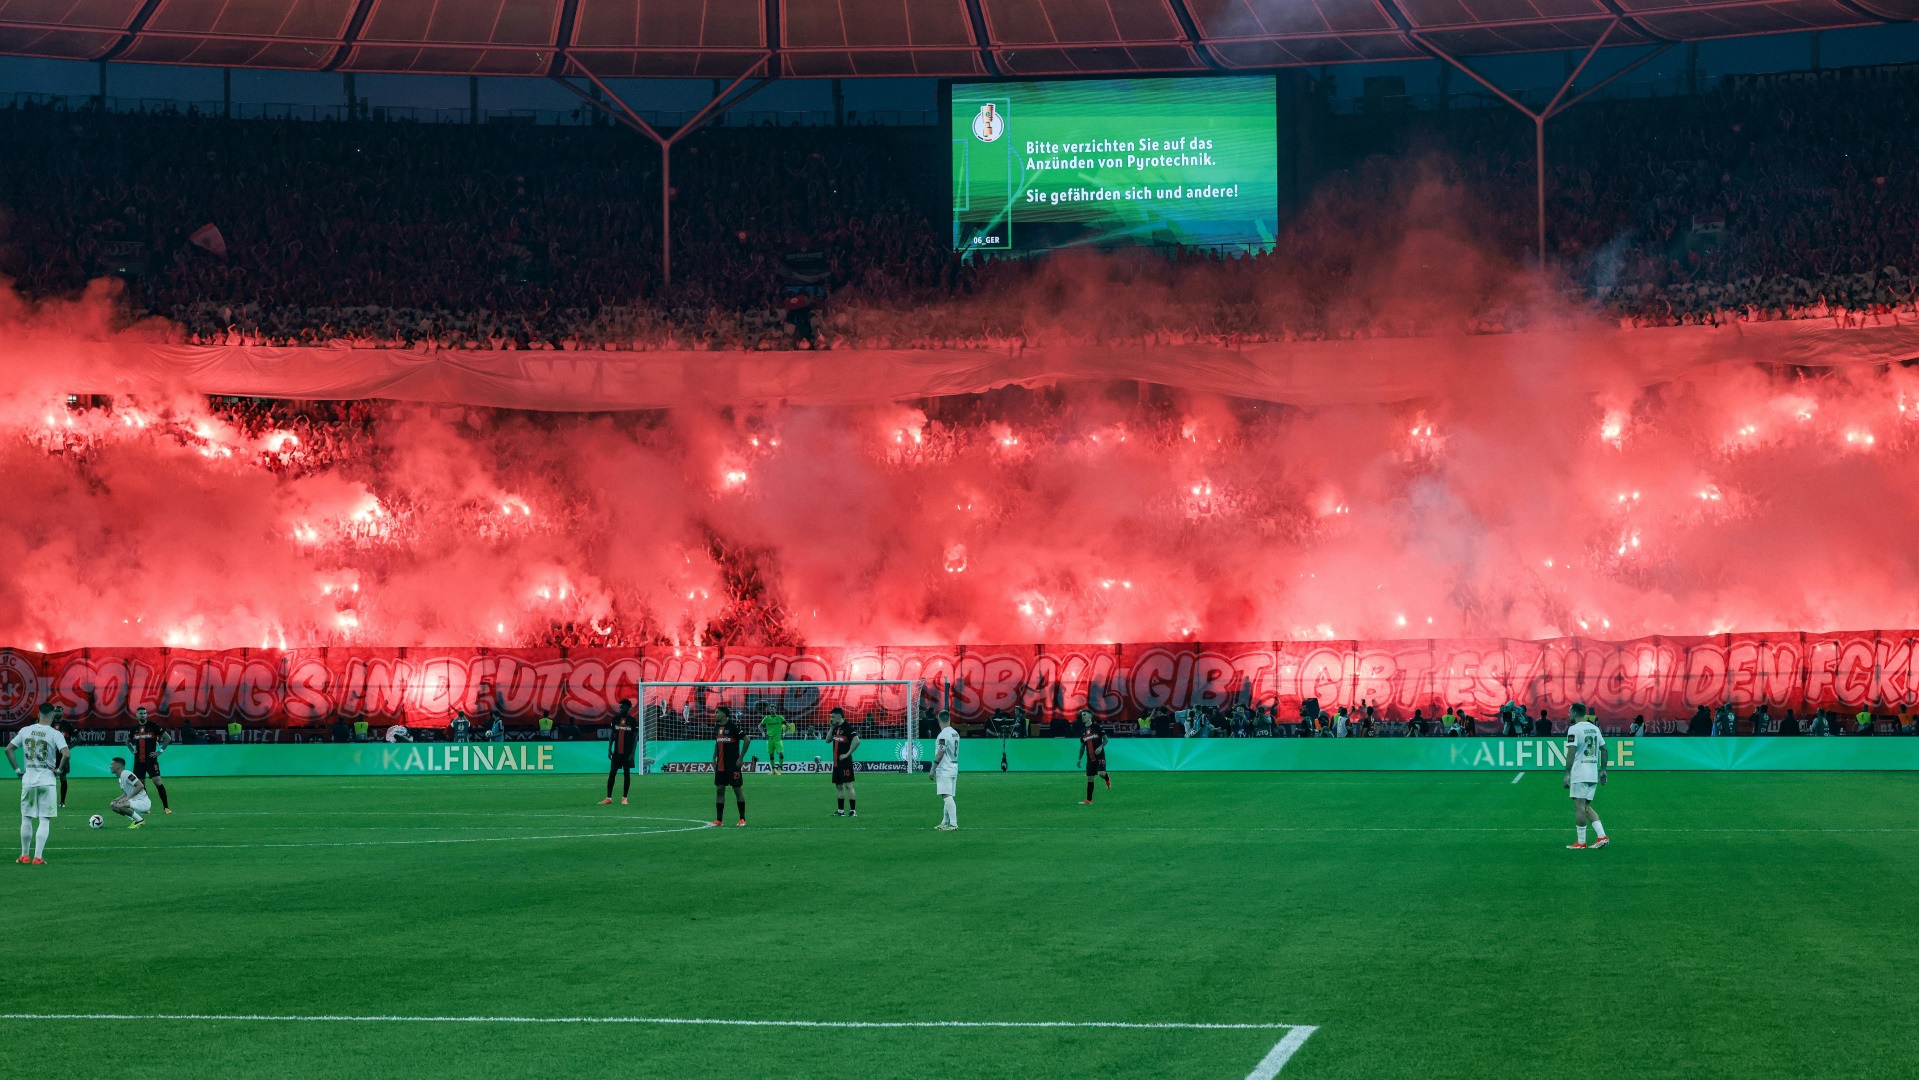 Die Fans zünden in deutschen Stadien immer wieder Pyro